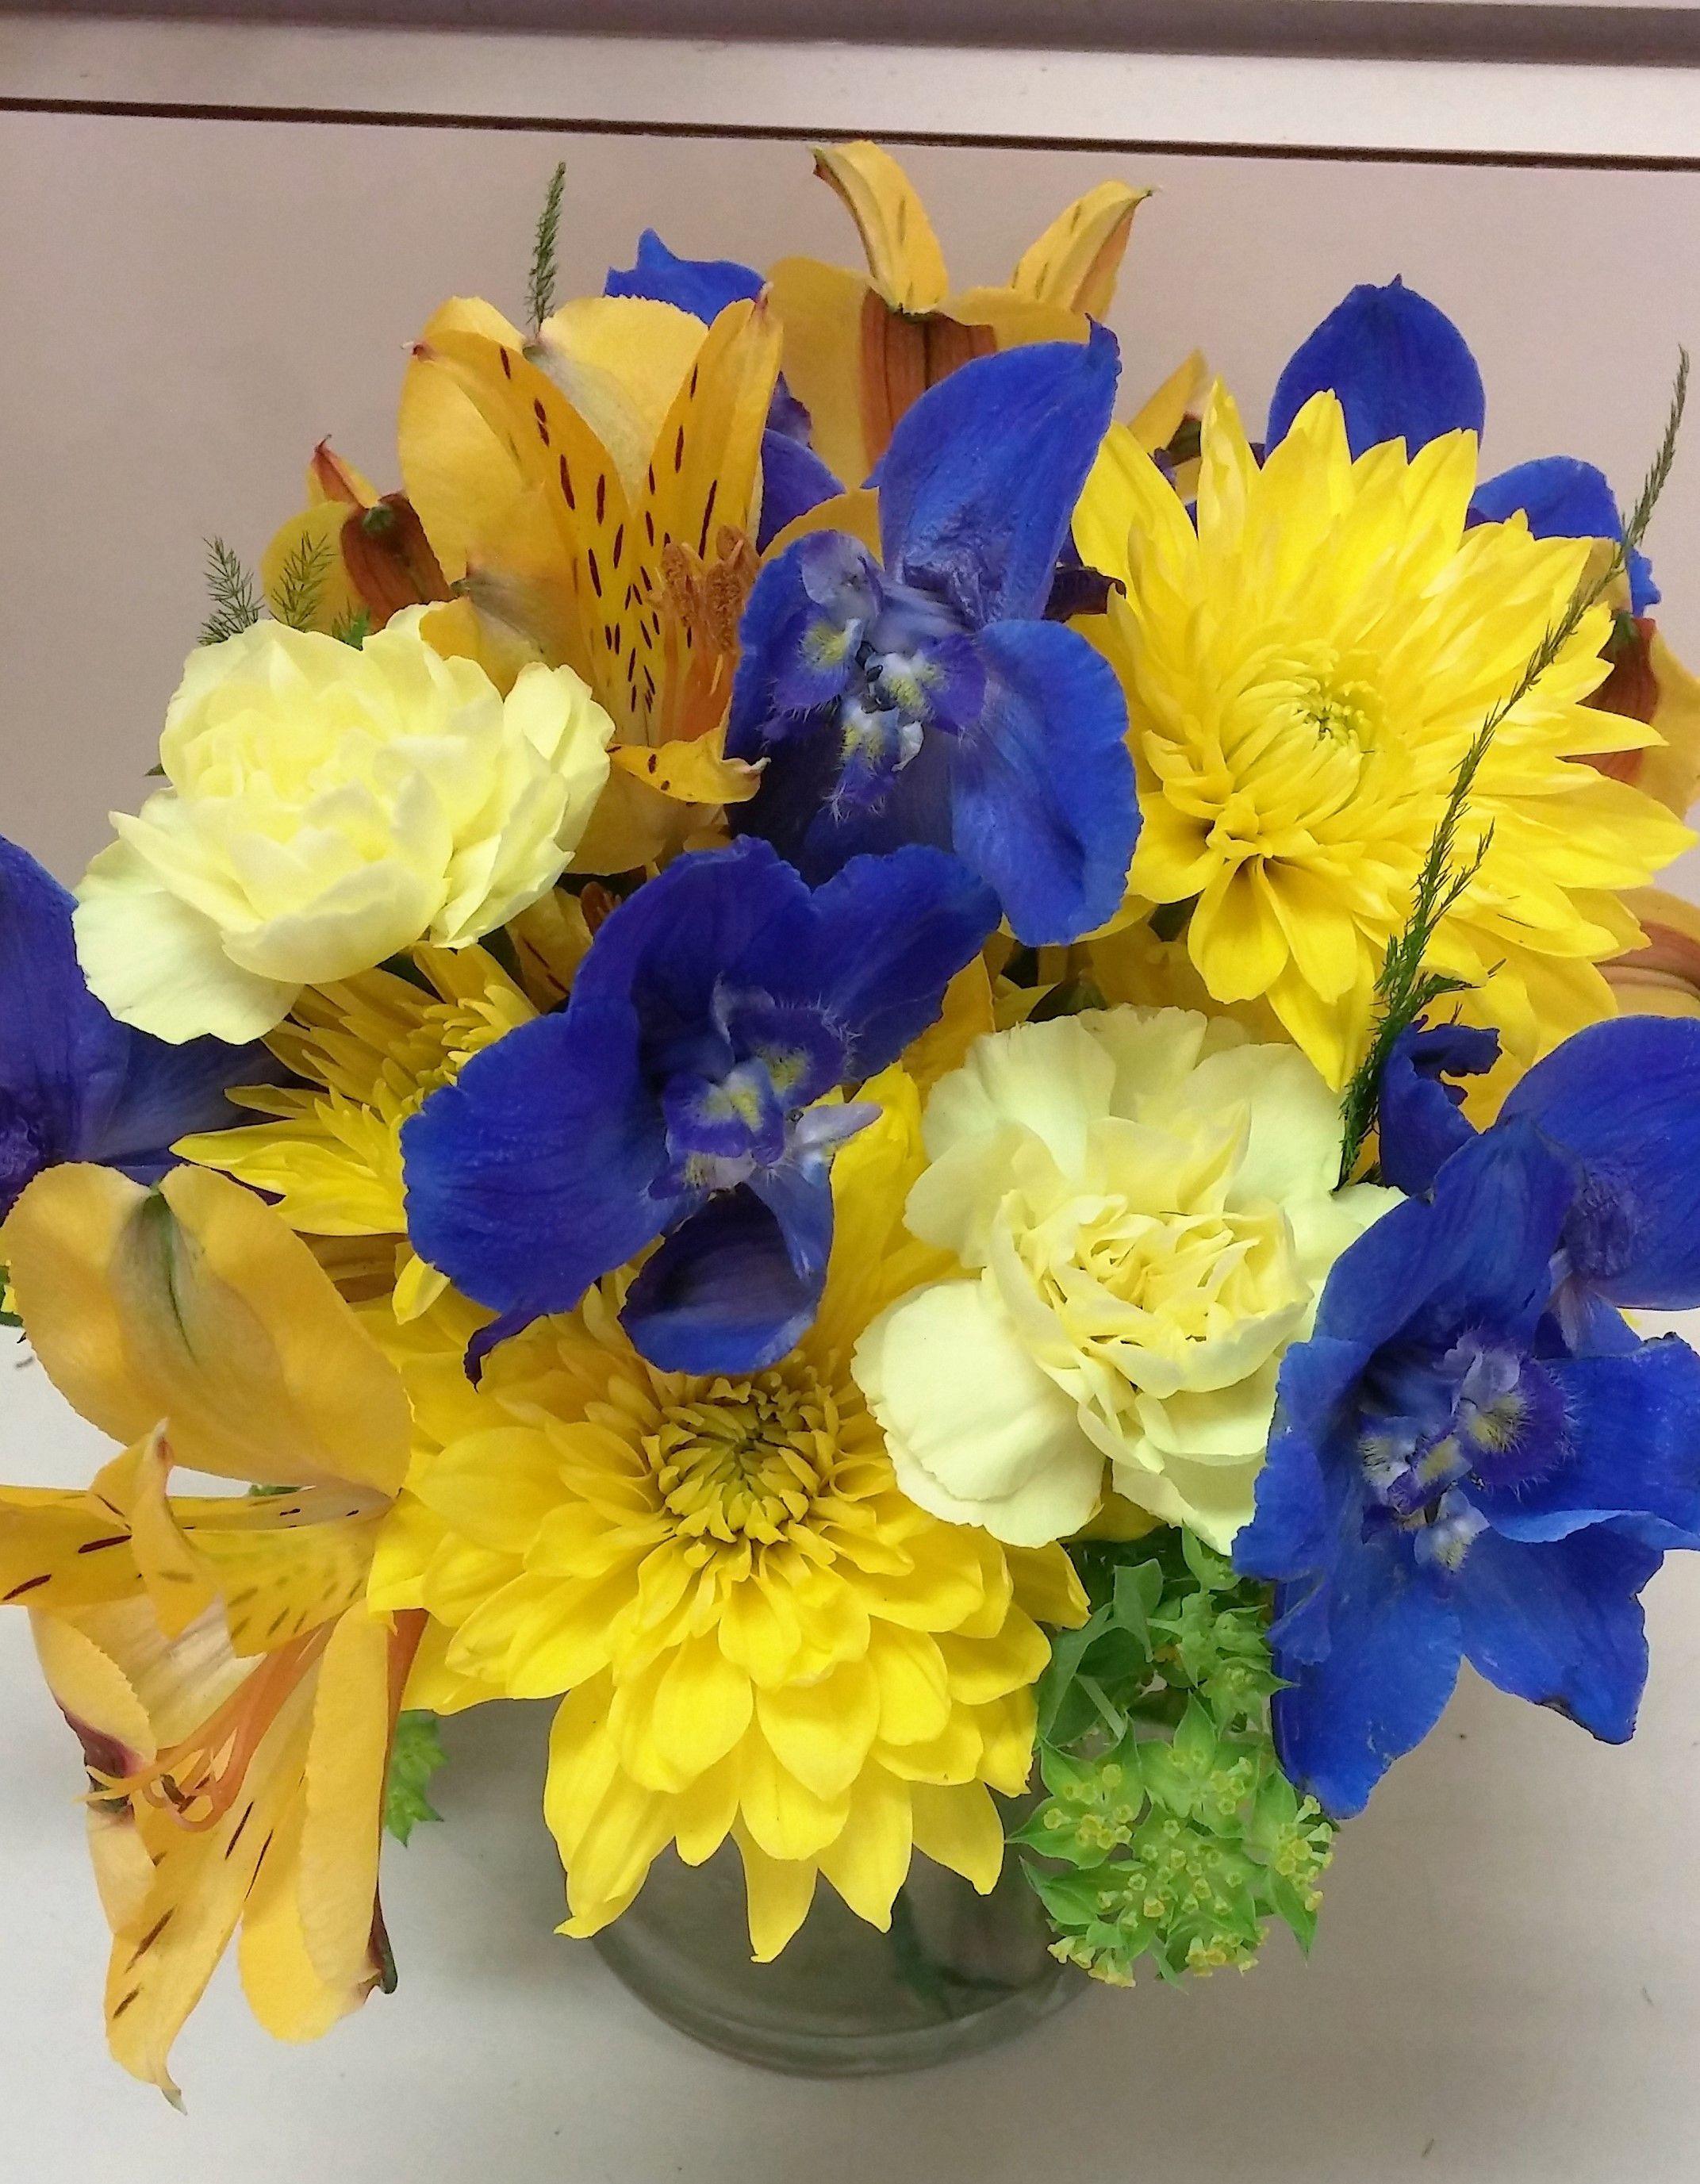 Floral Blue U Logo - u of m flower arrangement. maize and blue flowers. blue delphinium